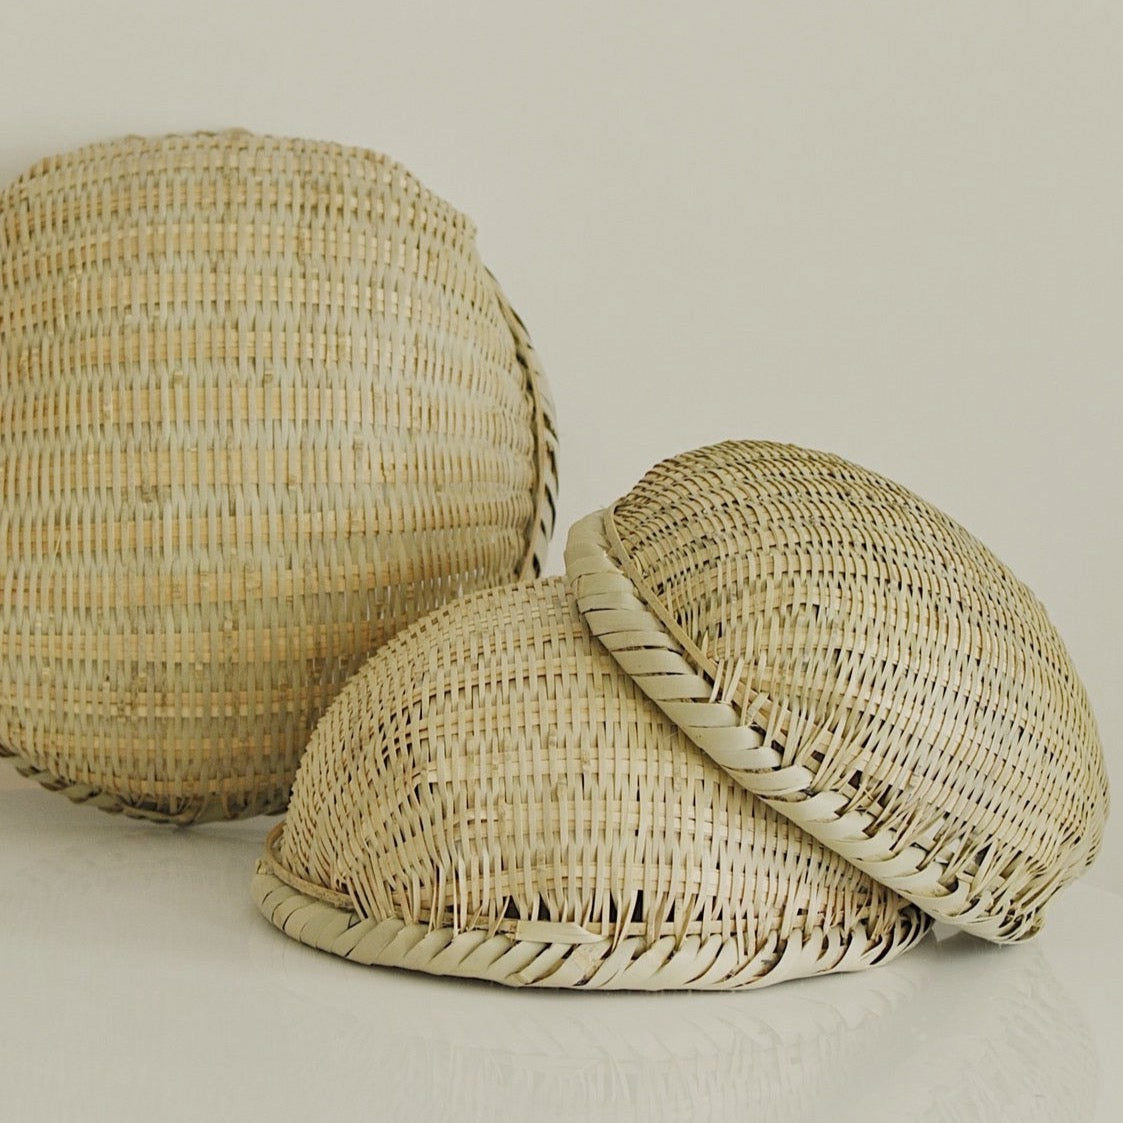 Bamboo "Sokuri" Basket